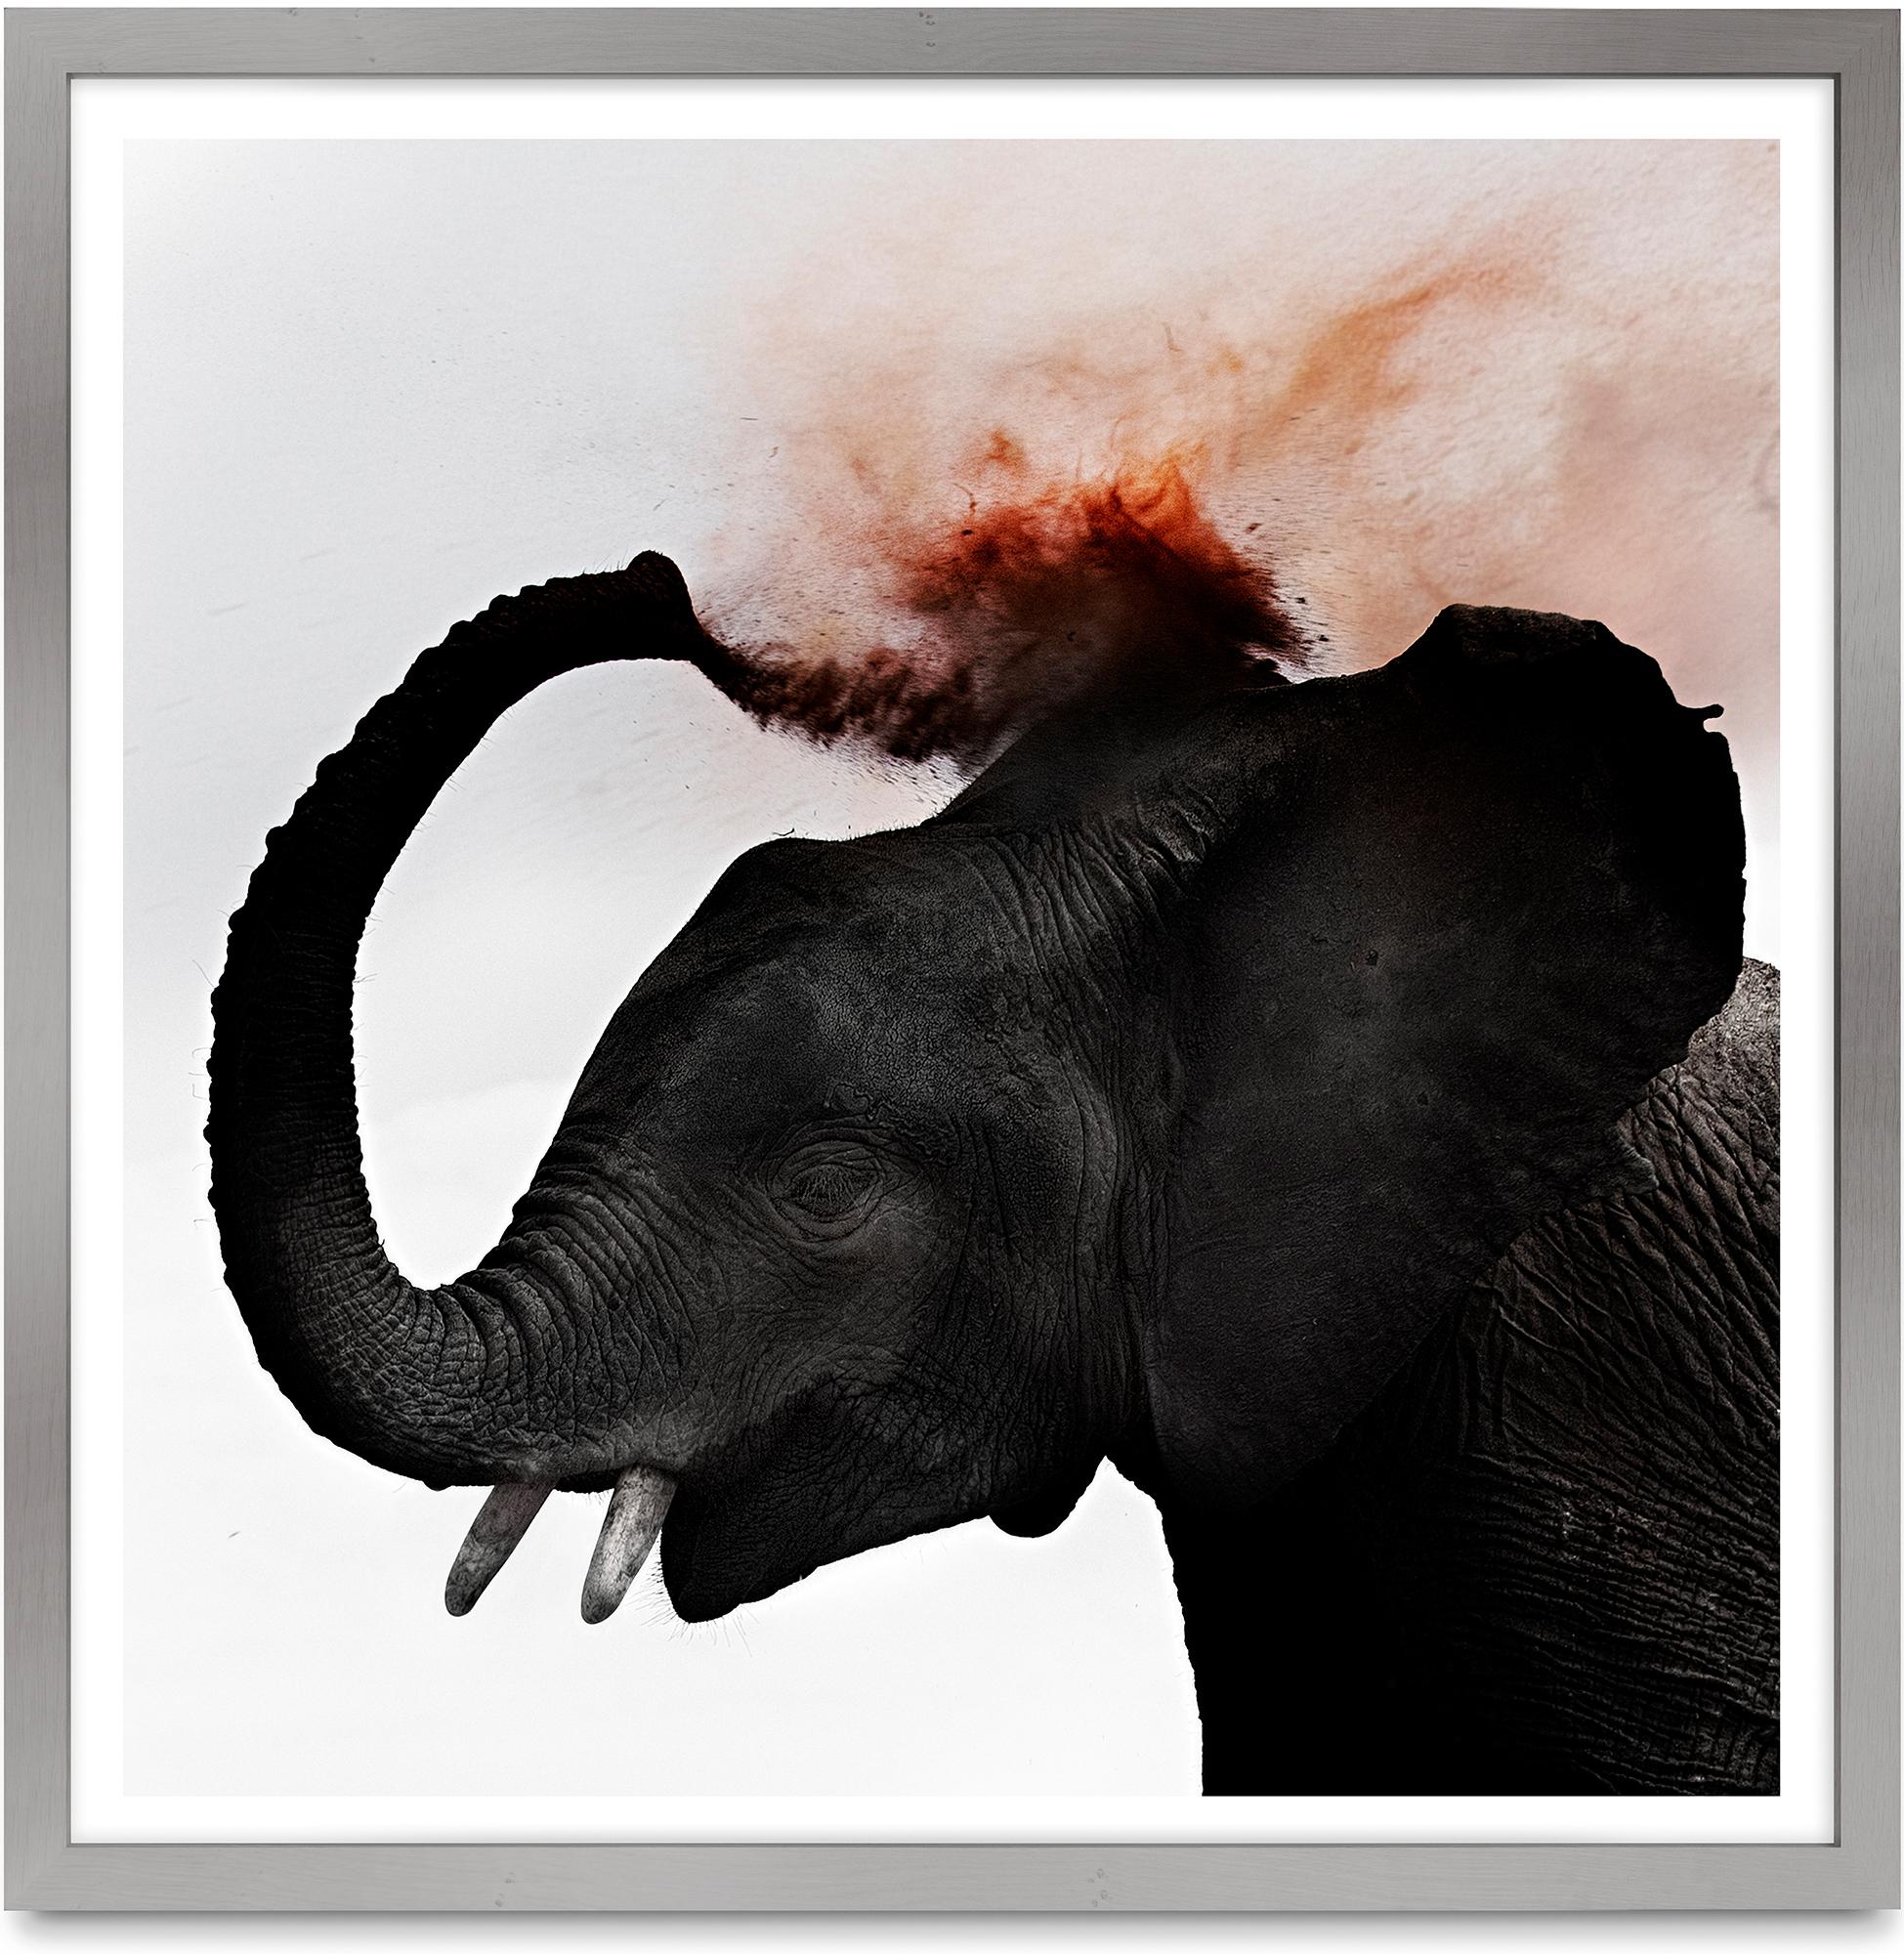 Color Photograph Joachim Schmeisser - Dust III, Kenya, Éléphant, animal, faune, photographie en couleur, Afrique